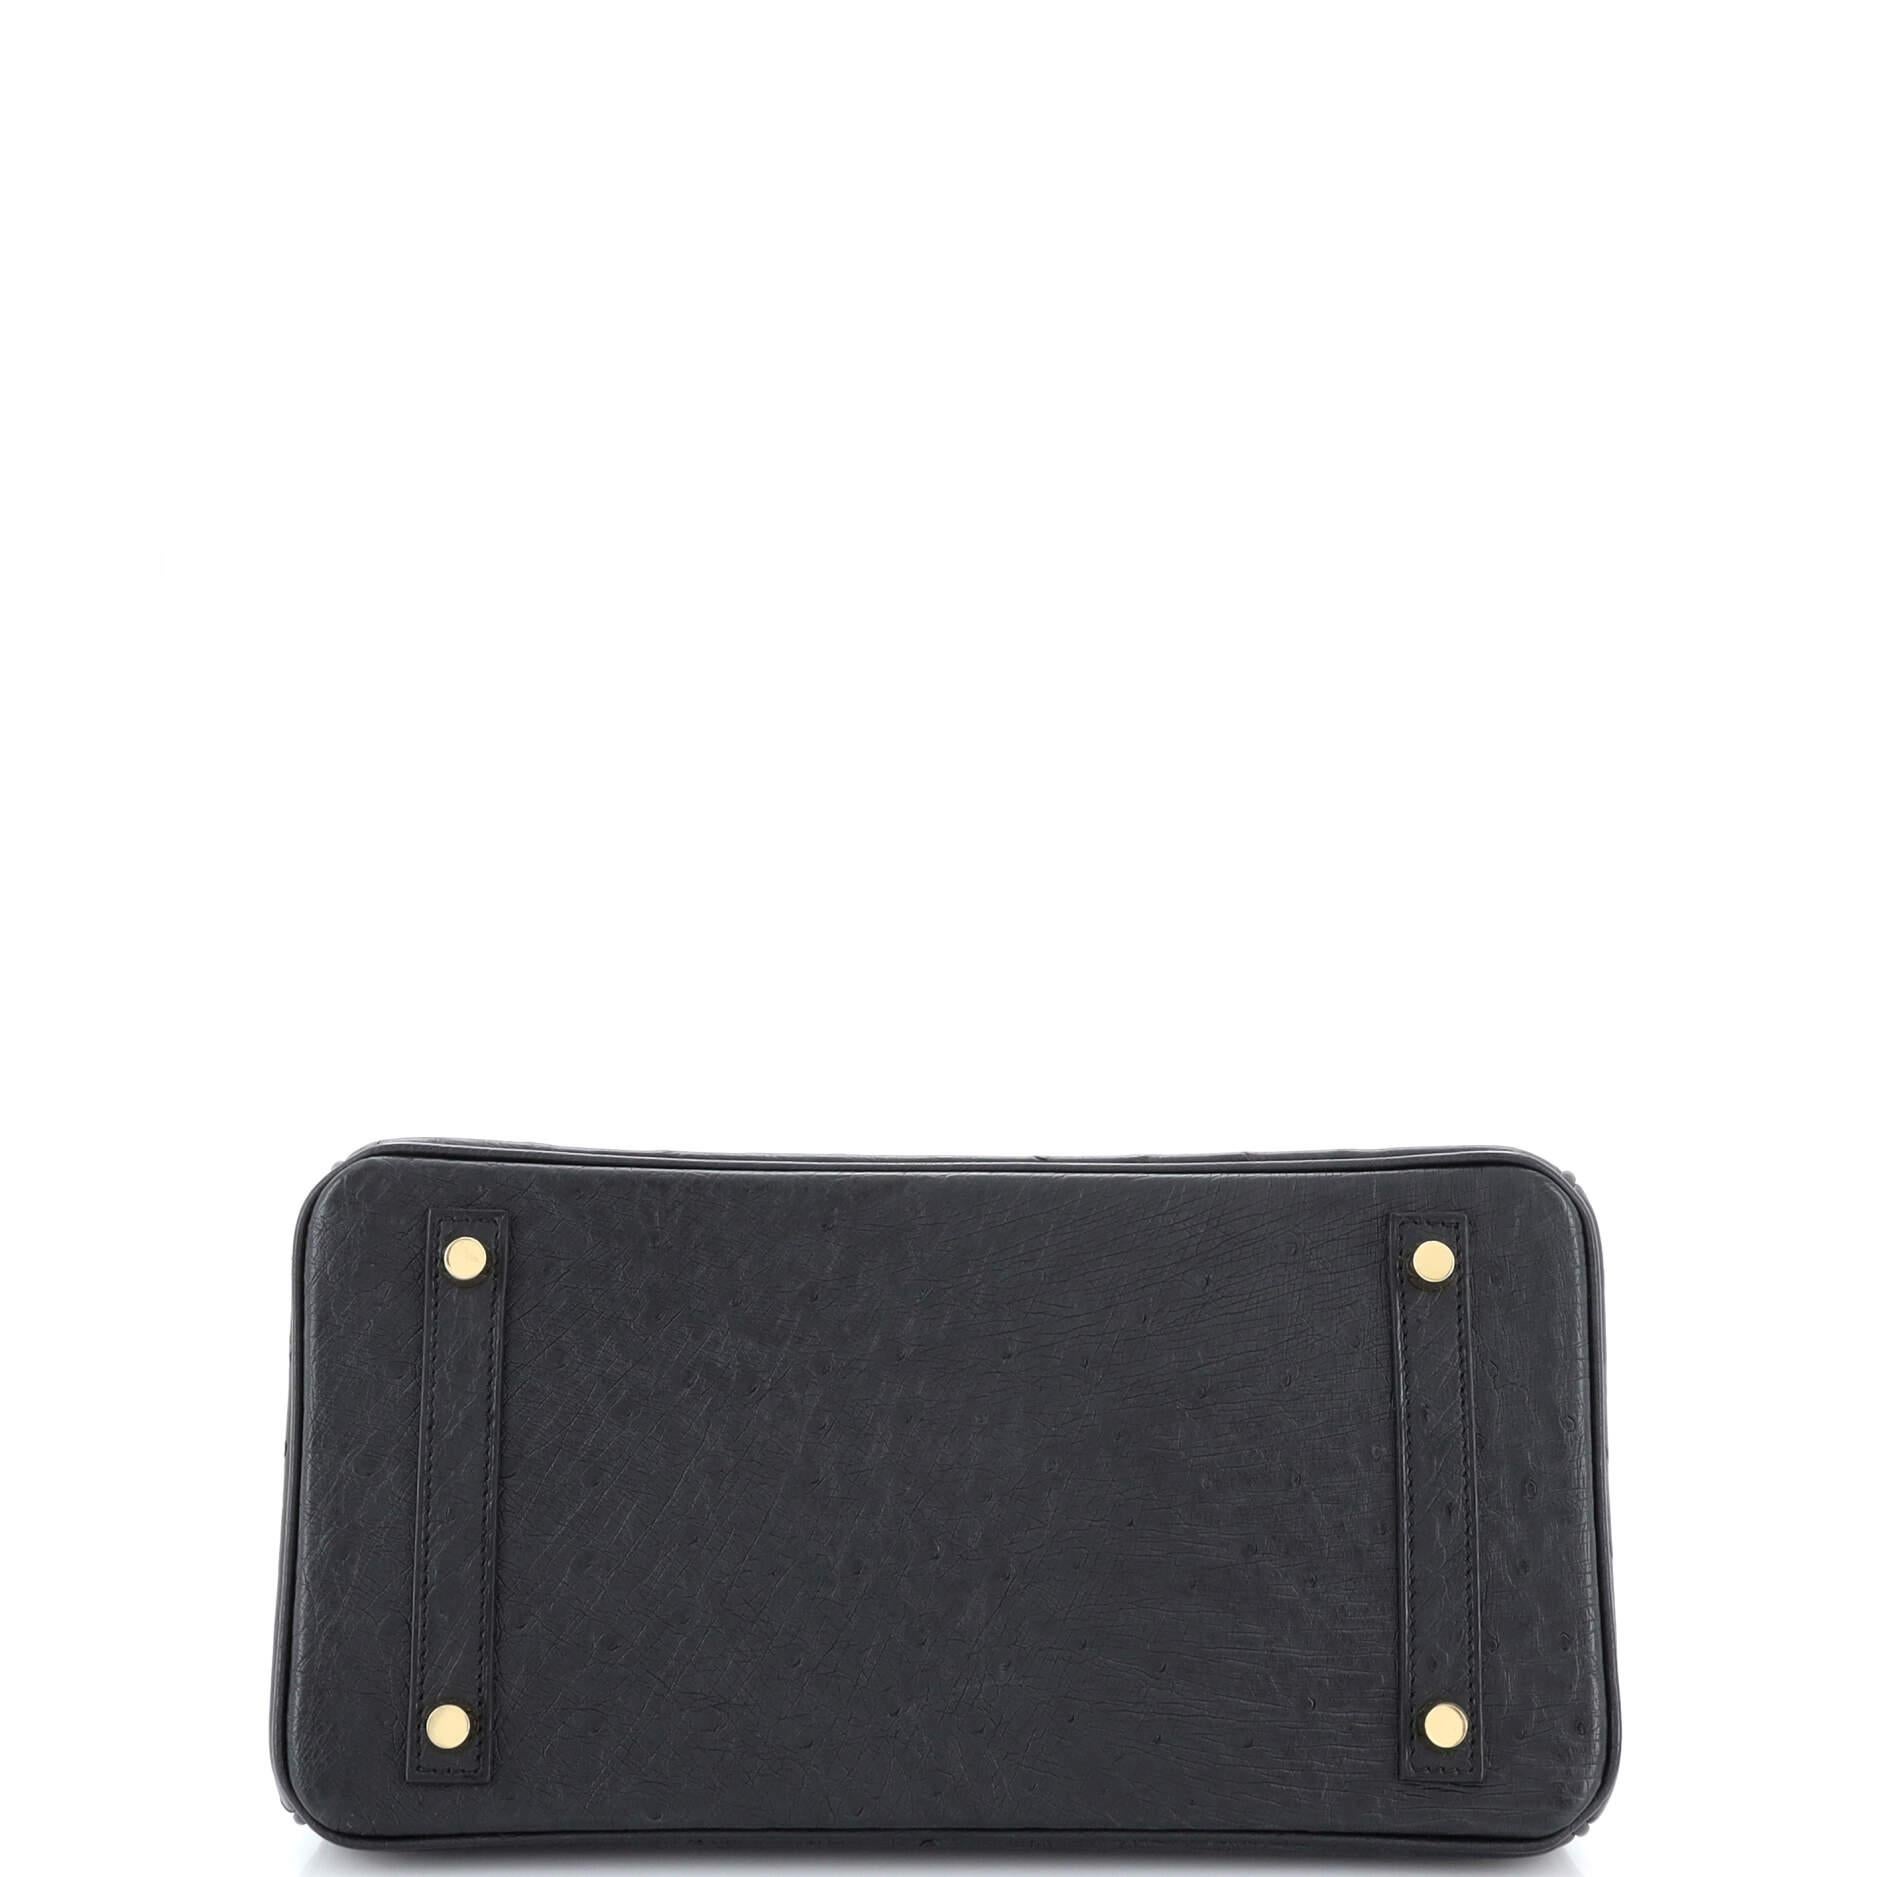 Hermes Birkin Handbag Noir Ostrich with Gold Hardware 30 1